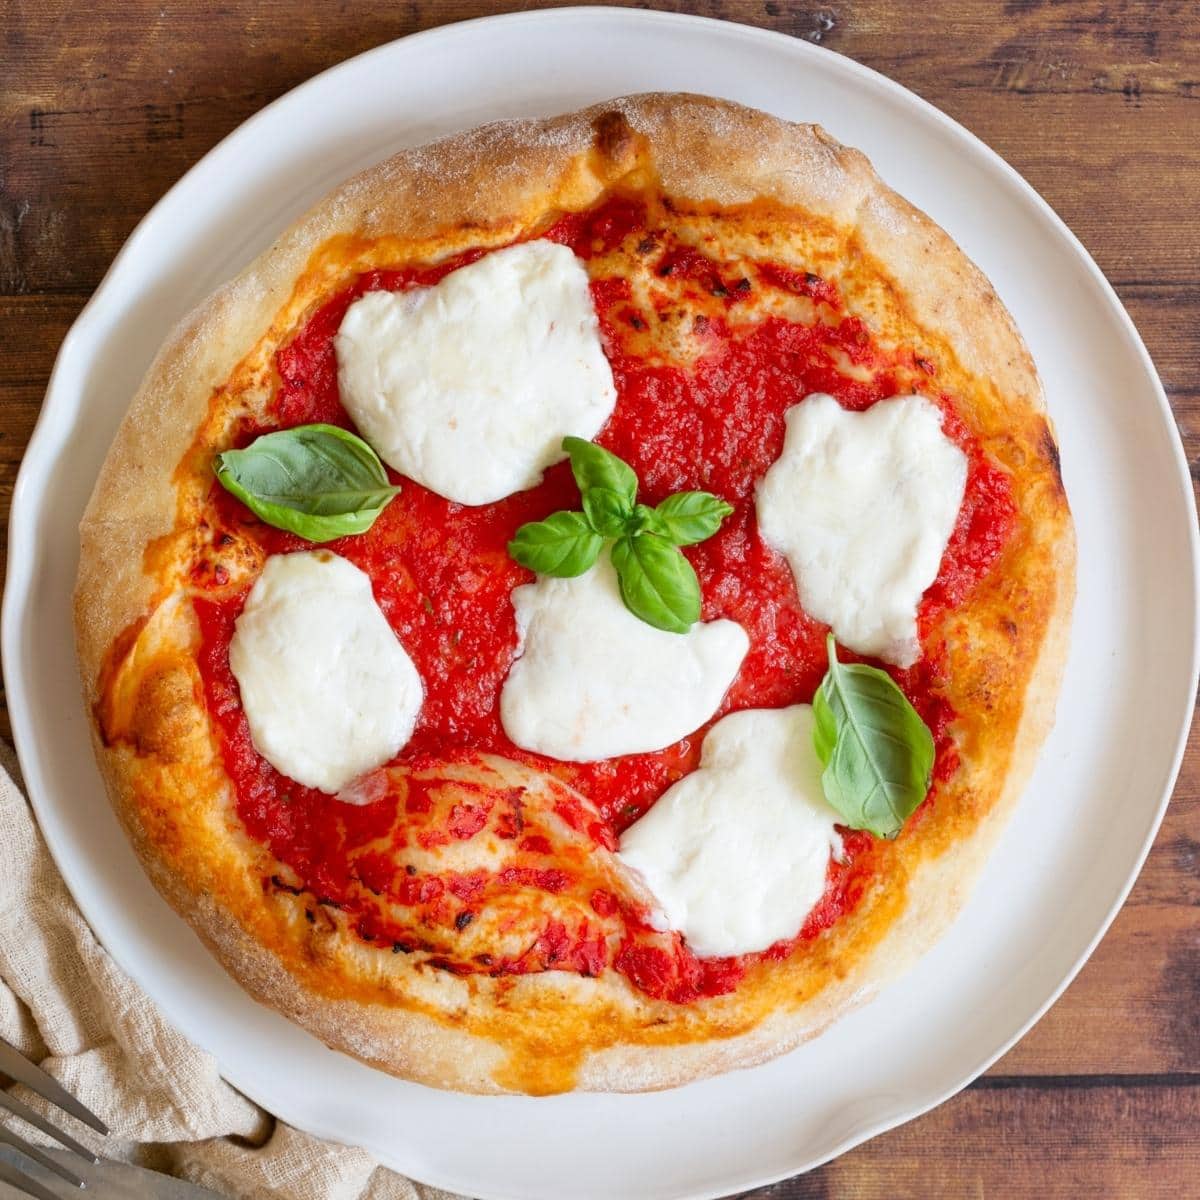 Homemade Pizza & Pizza Dough Recipe